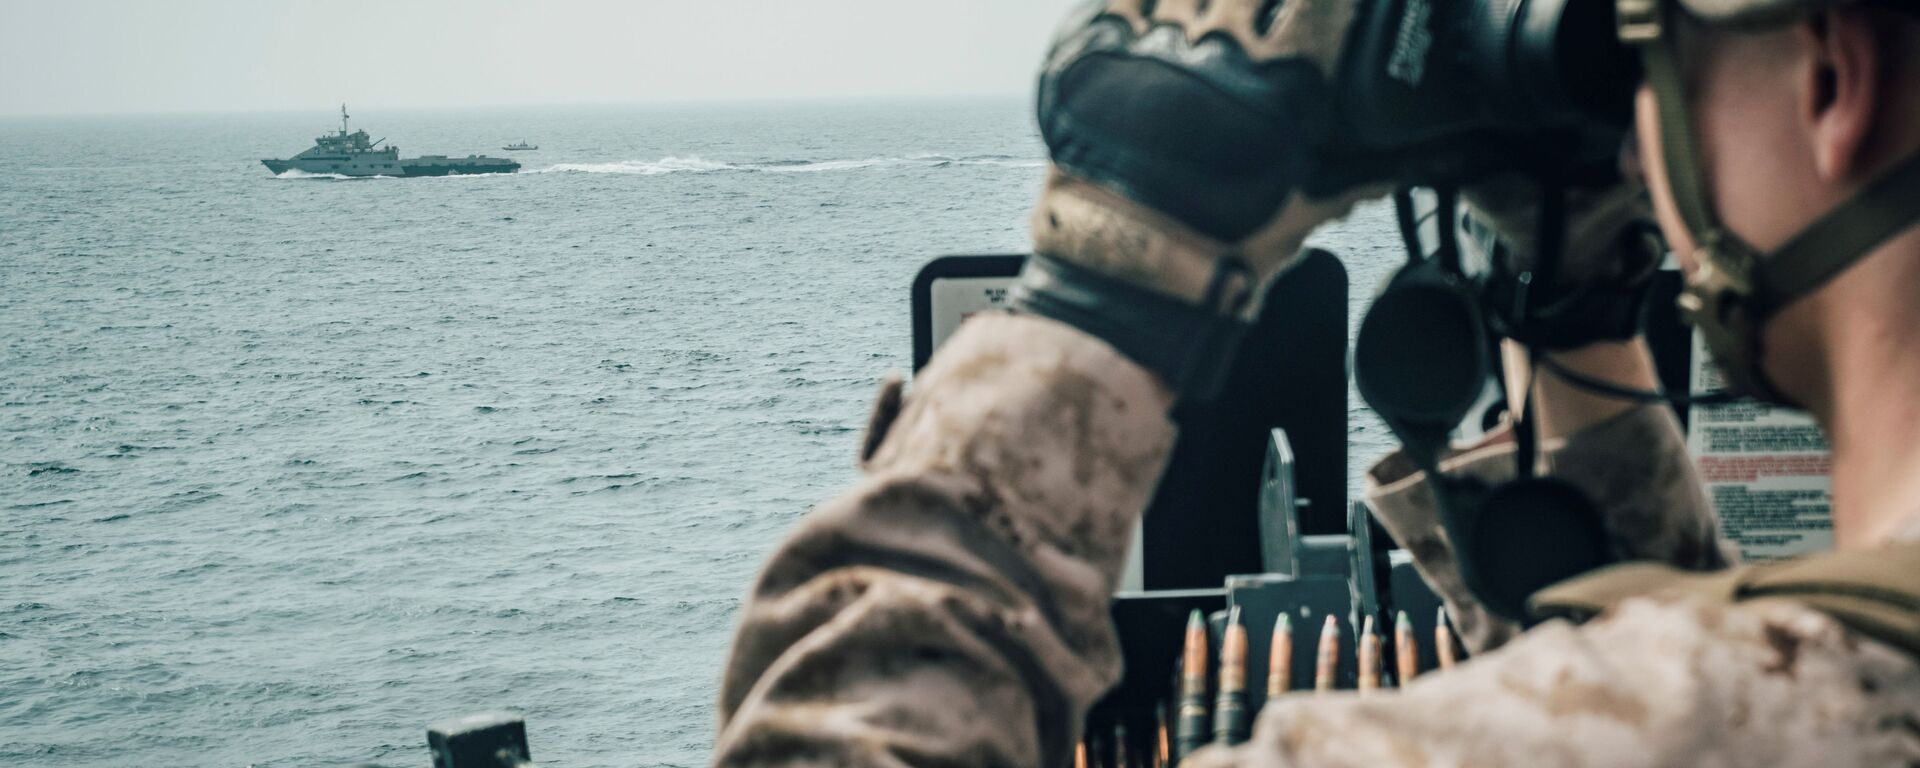 جندي من مشاة البحرية الأمريكية يراقب طائرة إيرانية هجومية من سفينة حربية أمريكية جون مورثا خلال مضيق هرمز في بحر العرب قبالة عُمان، 18 يوليو/ تموز 2019 - سبوتنيك عربي, 1920, 30.12.2021